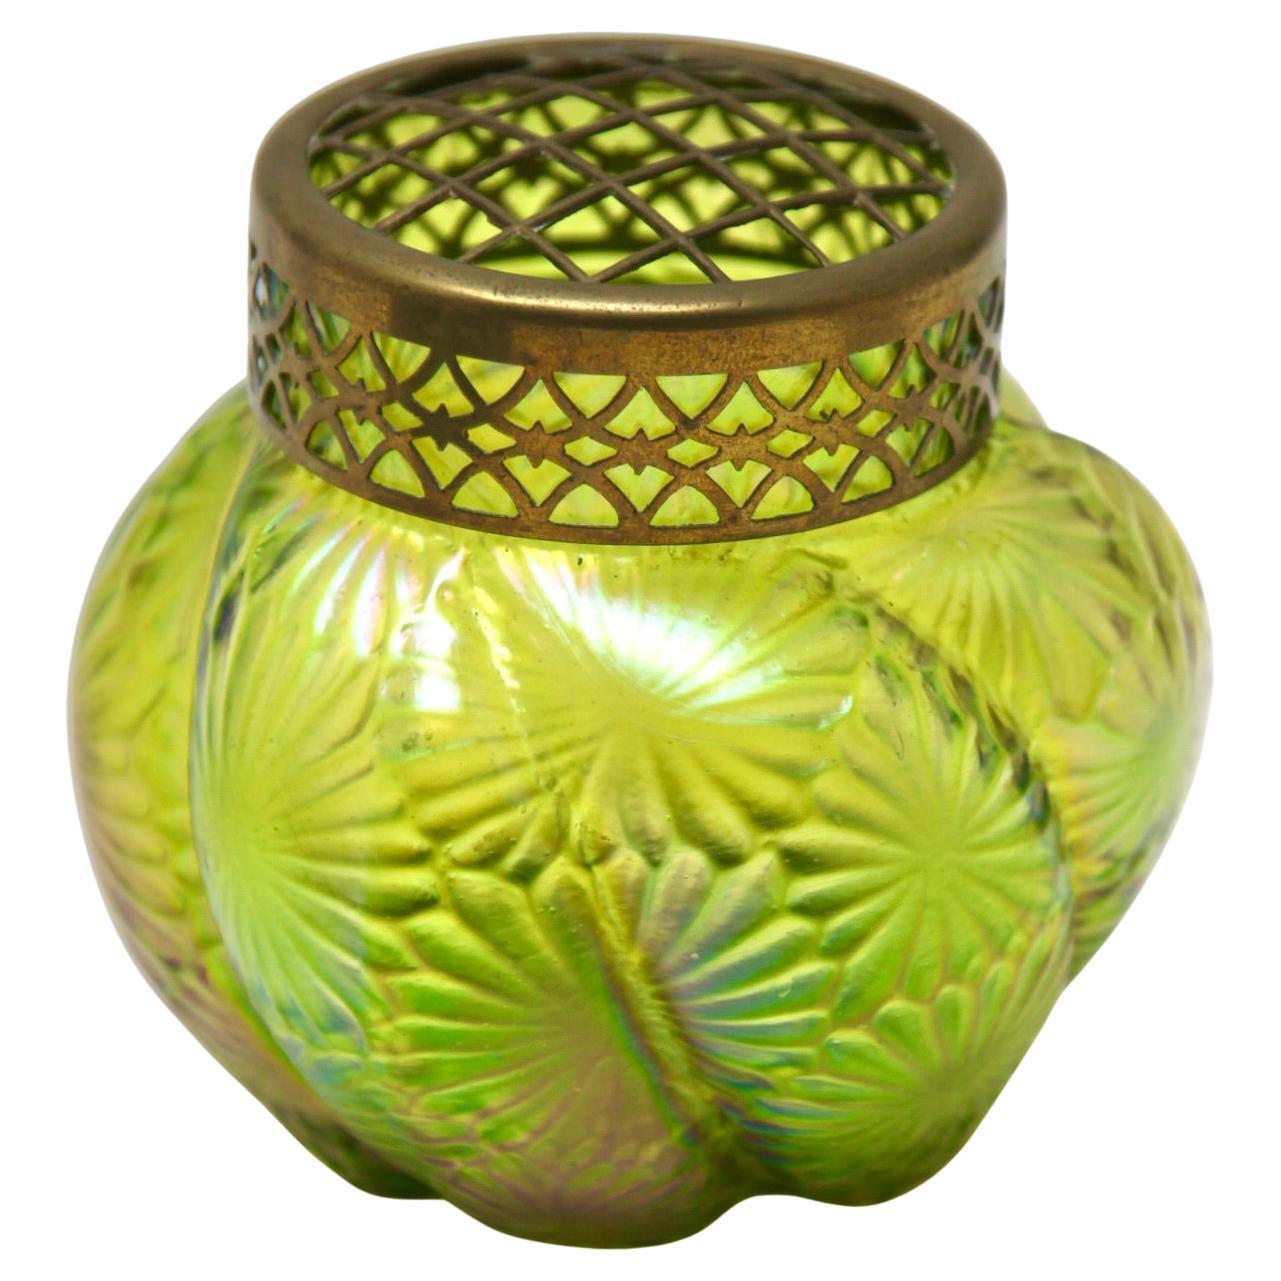 Art Nouveau iridescent glass Pique Fleurs' vase by Loetz' with Grille For Sale